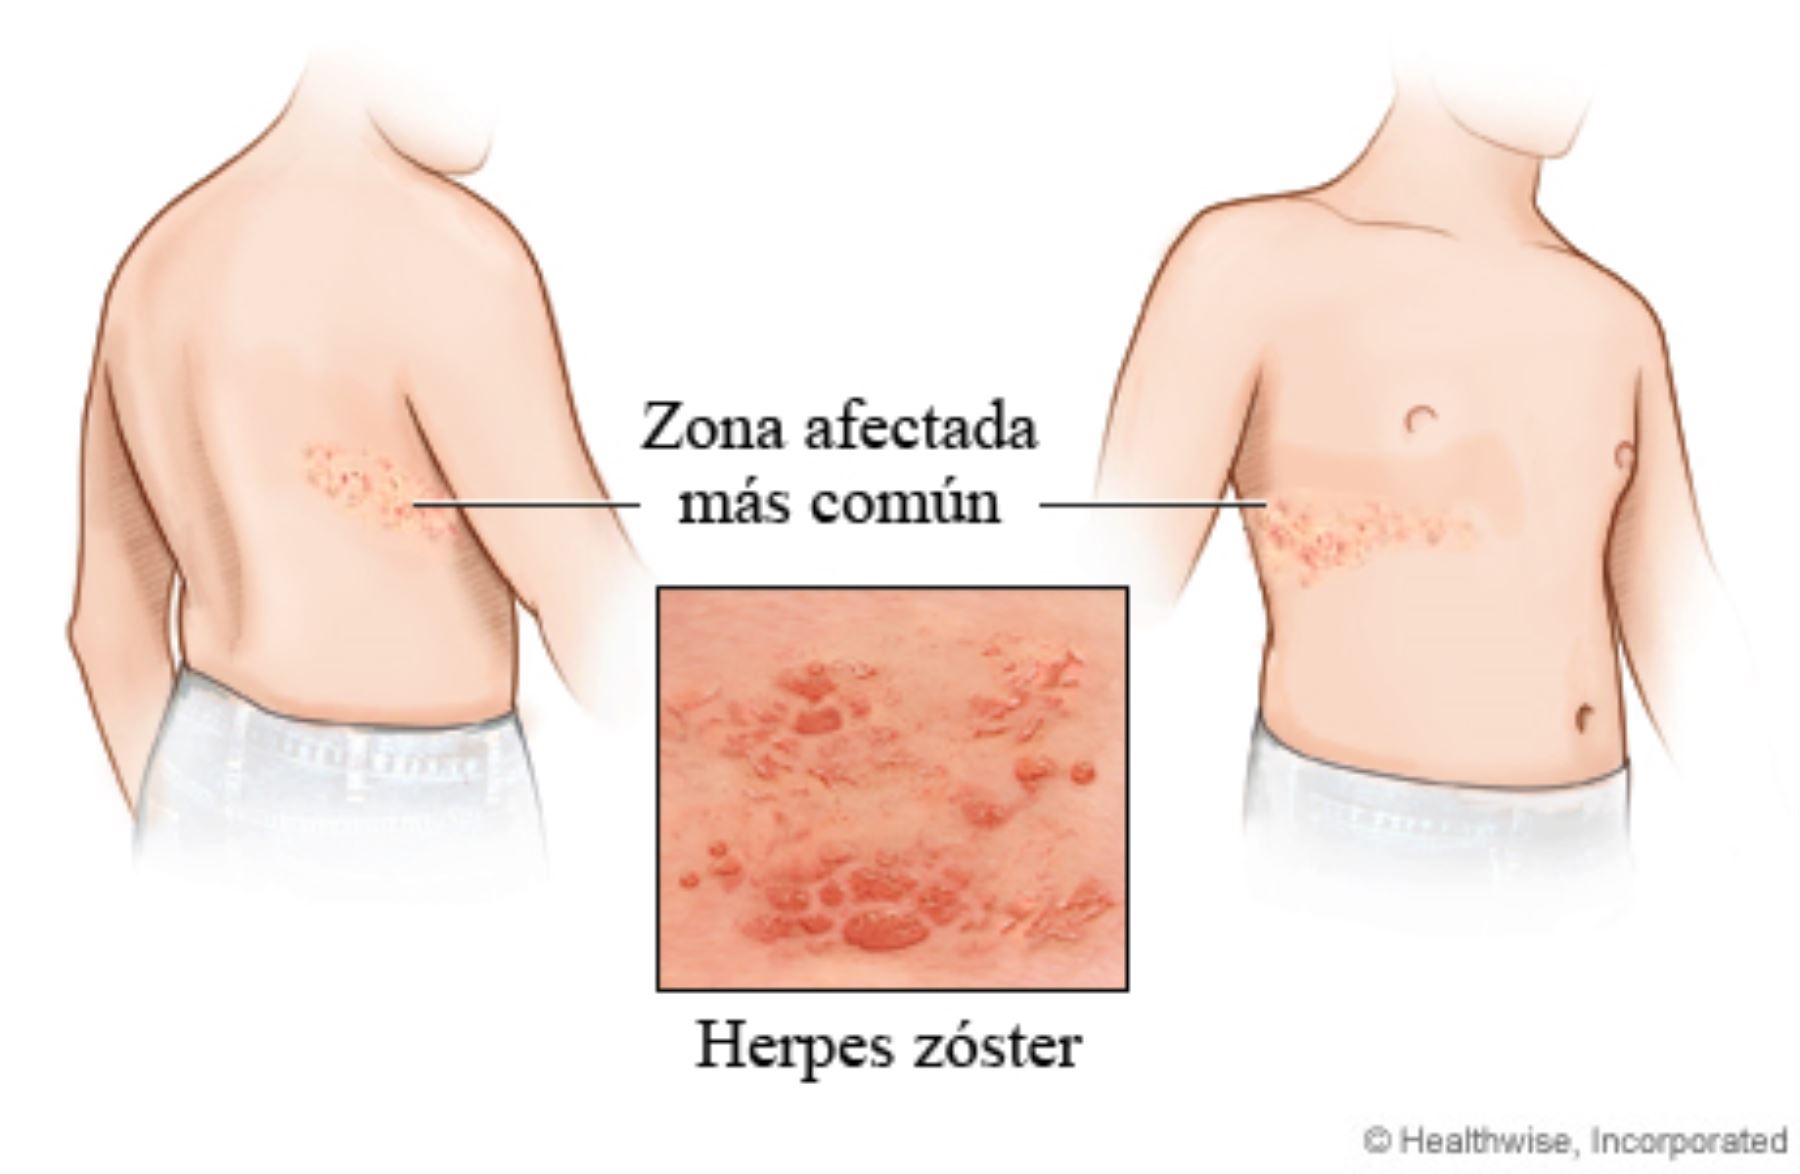 Cualquier persona que haya sufrido varicela puede desarrollar herpes zóster, incluso niños, pero el riesgo de desarrollarla se incrementa con la edad.